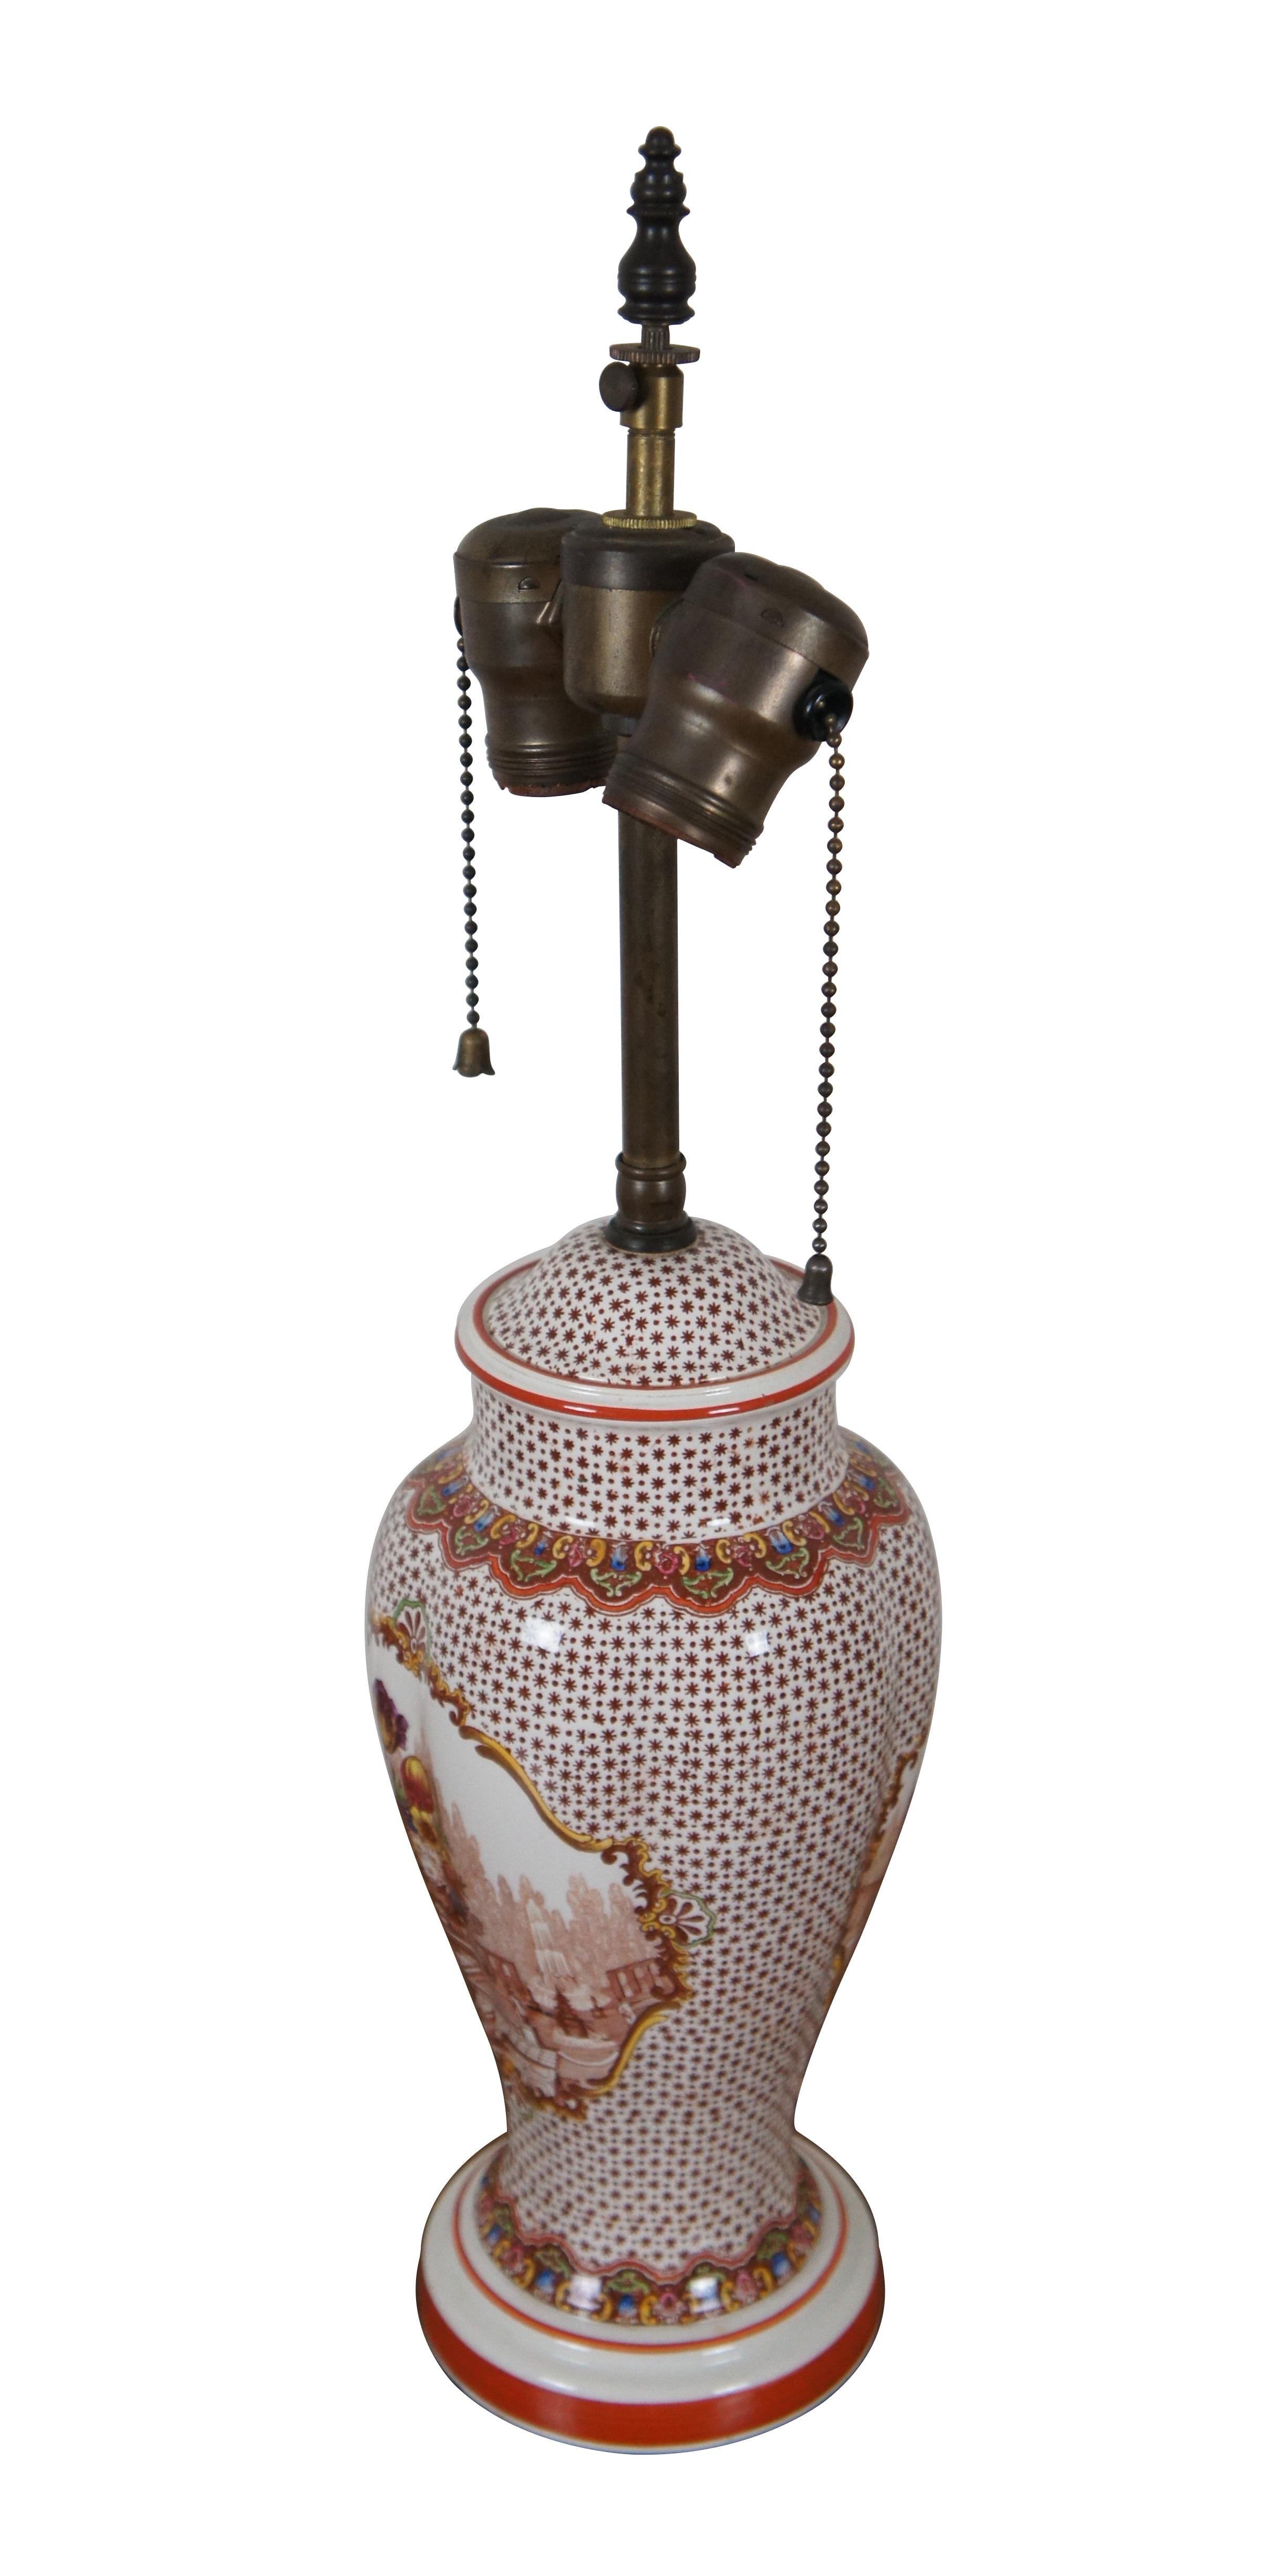 Lampe de table à deux lumières en porcelaine transférée vintage présentant un pot de gingembre ou une urne de cheminée avec une scène de paysage de nature morte d'une table avec un bouquet de fleurs colorées au centre d'un magnifique